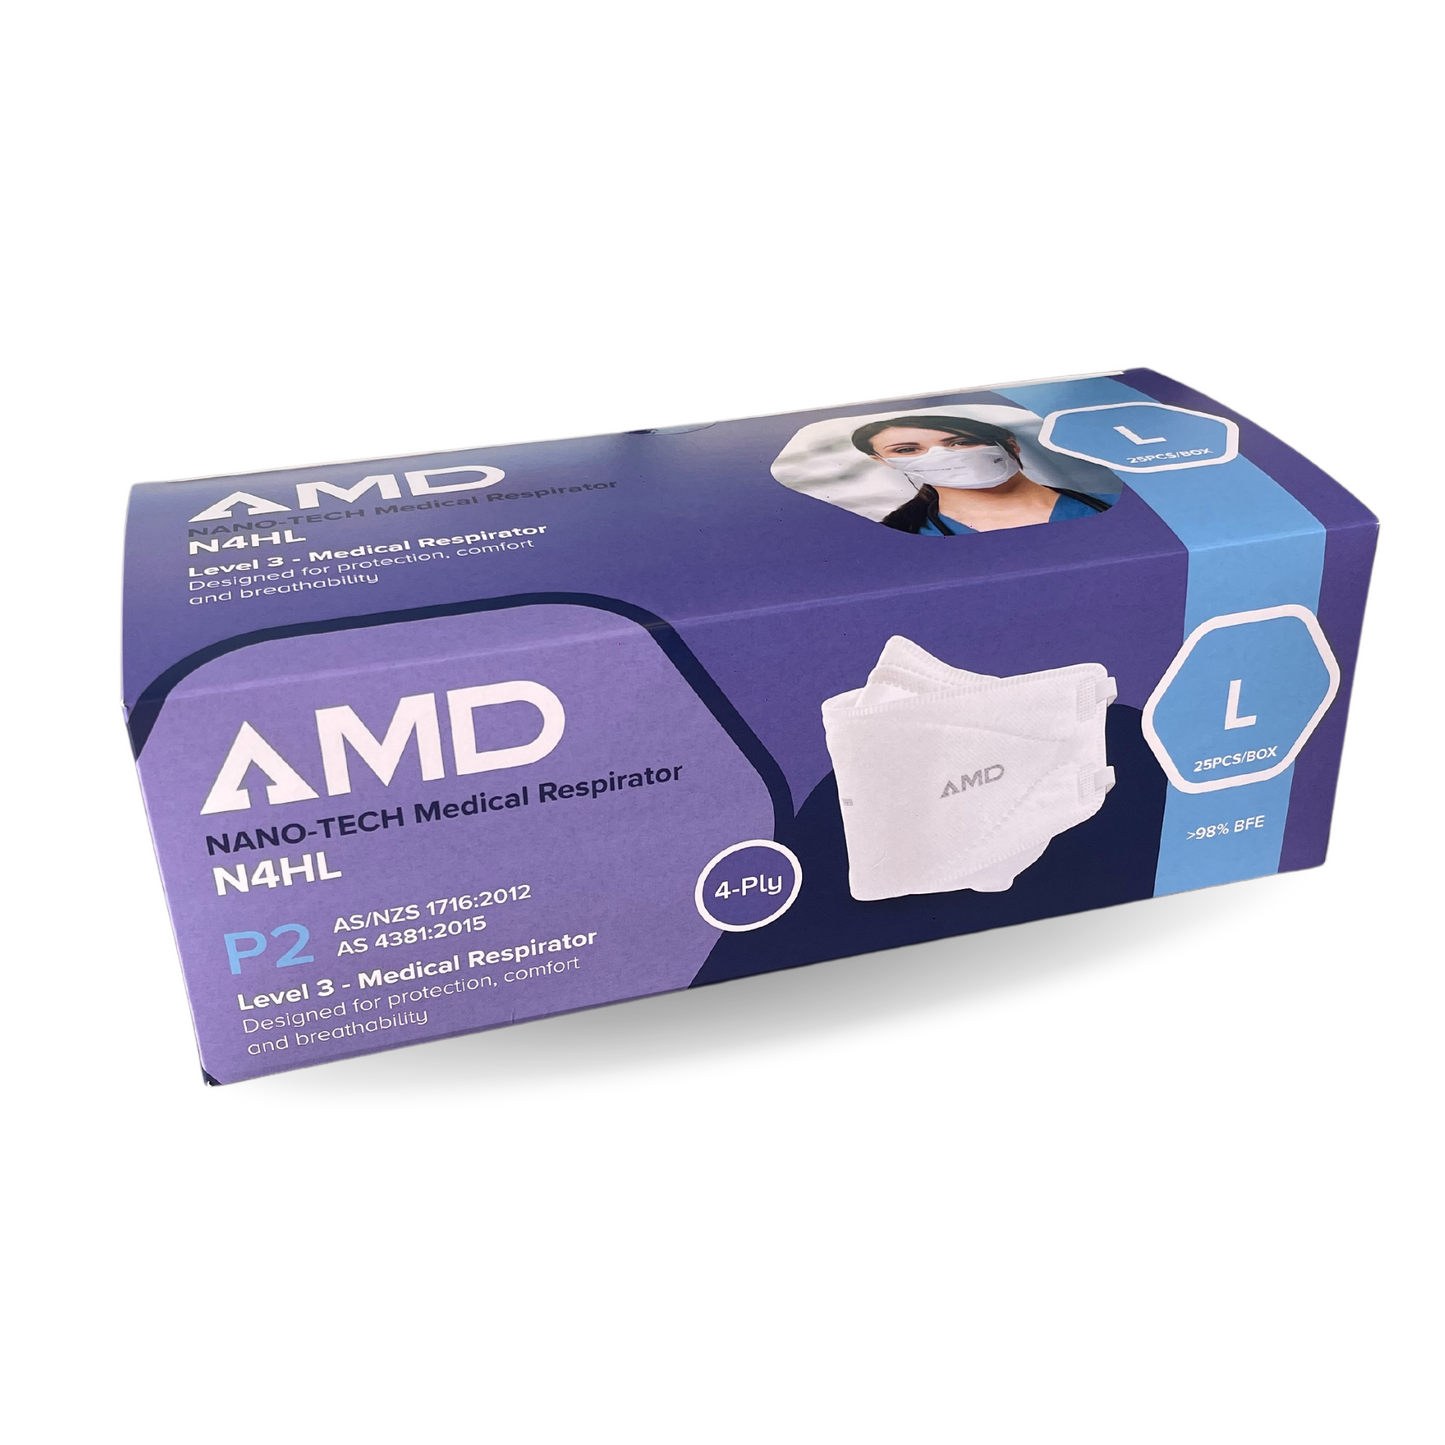 AMD P2 Nano-tech Respirator Mask, 4-layer - Head Bands N4HL - Lge - White - Box (25pc)